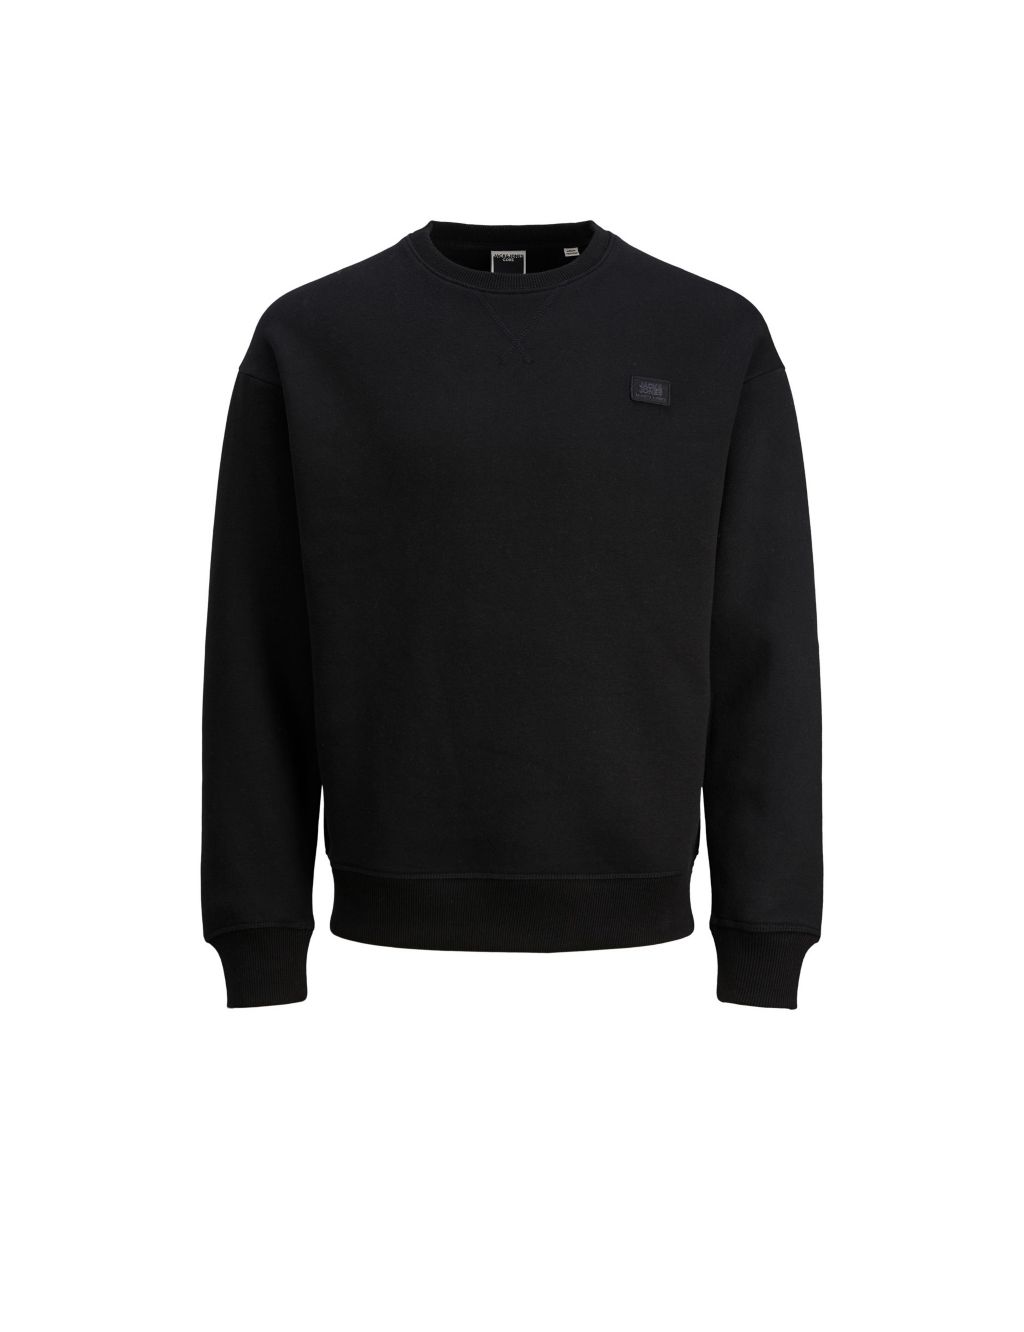 Buy Cotton Rich Crew Neck Sweatshirt | JACK & JONES | M&S